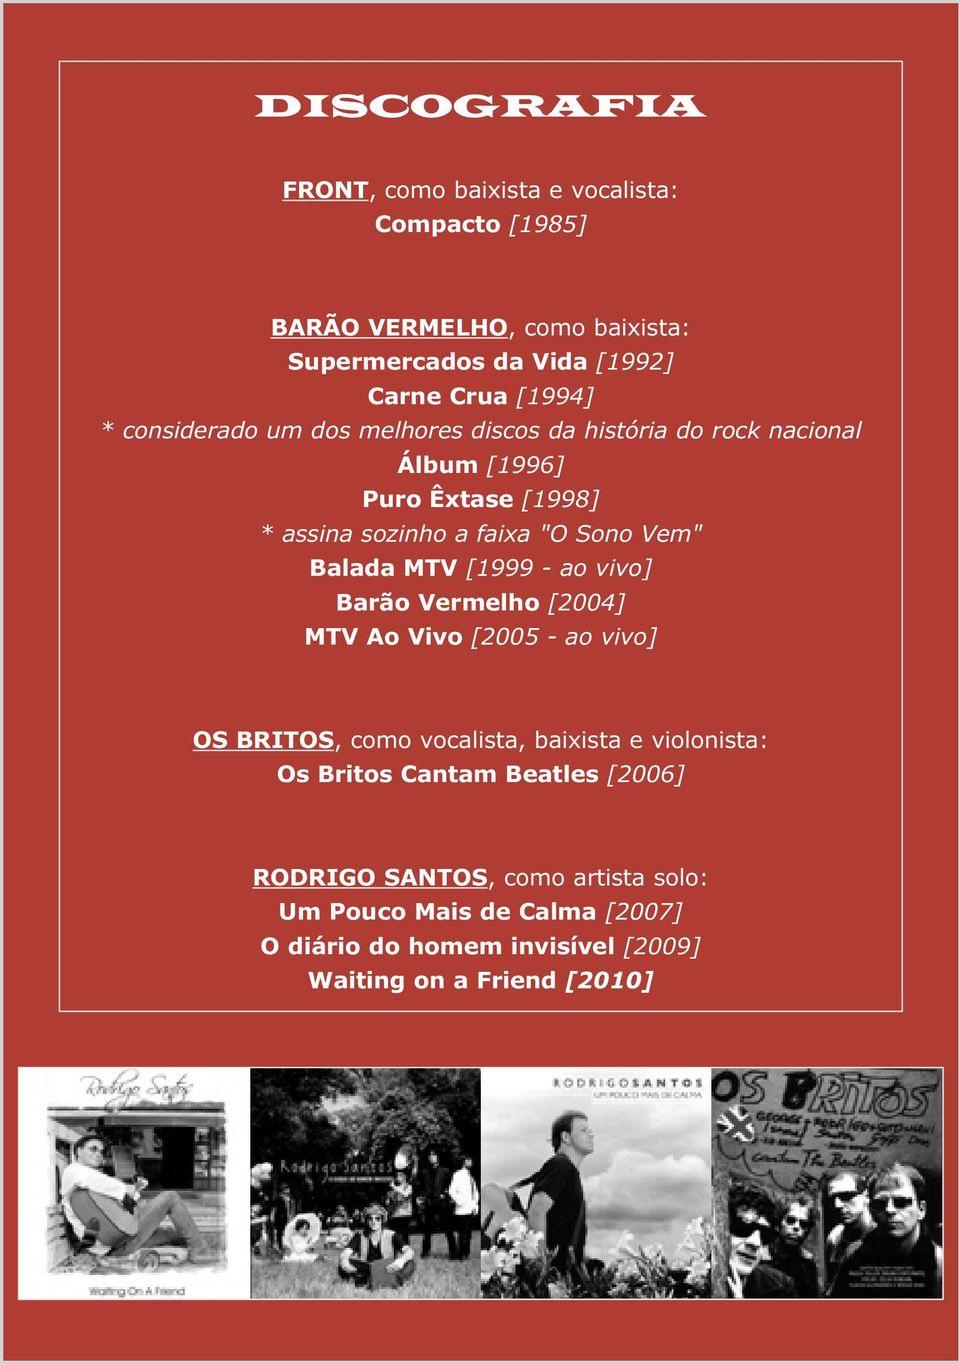 Balada MTV [1999 - ao vivo] Barão Vermelho [2004] MTV Ao Vivo [2005 - ao vivo] OS BRITOS, como vocalista, baixista e violonista: Os Britos